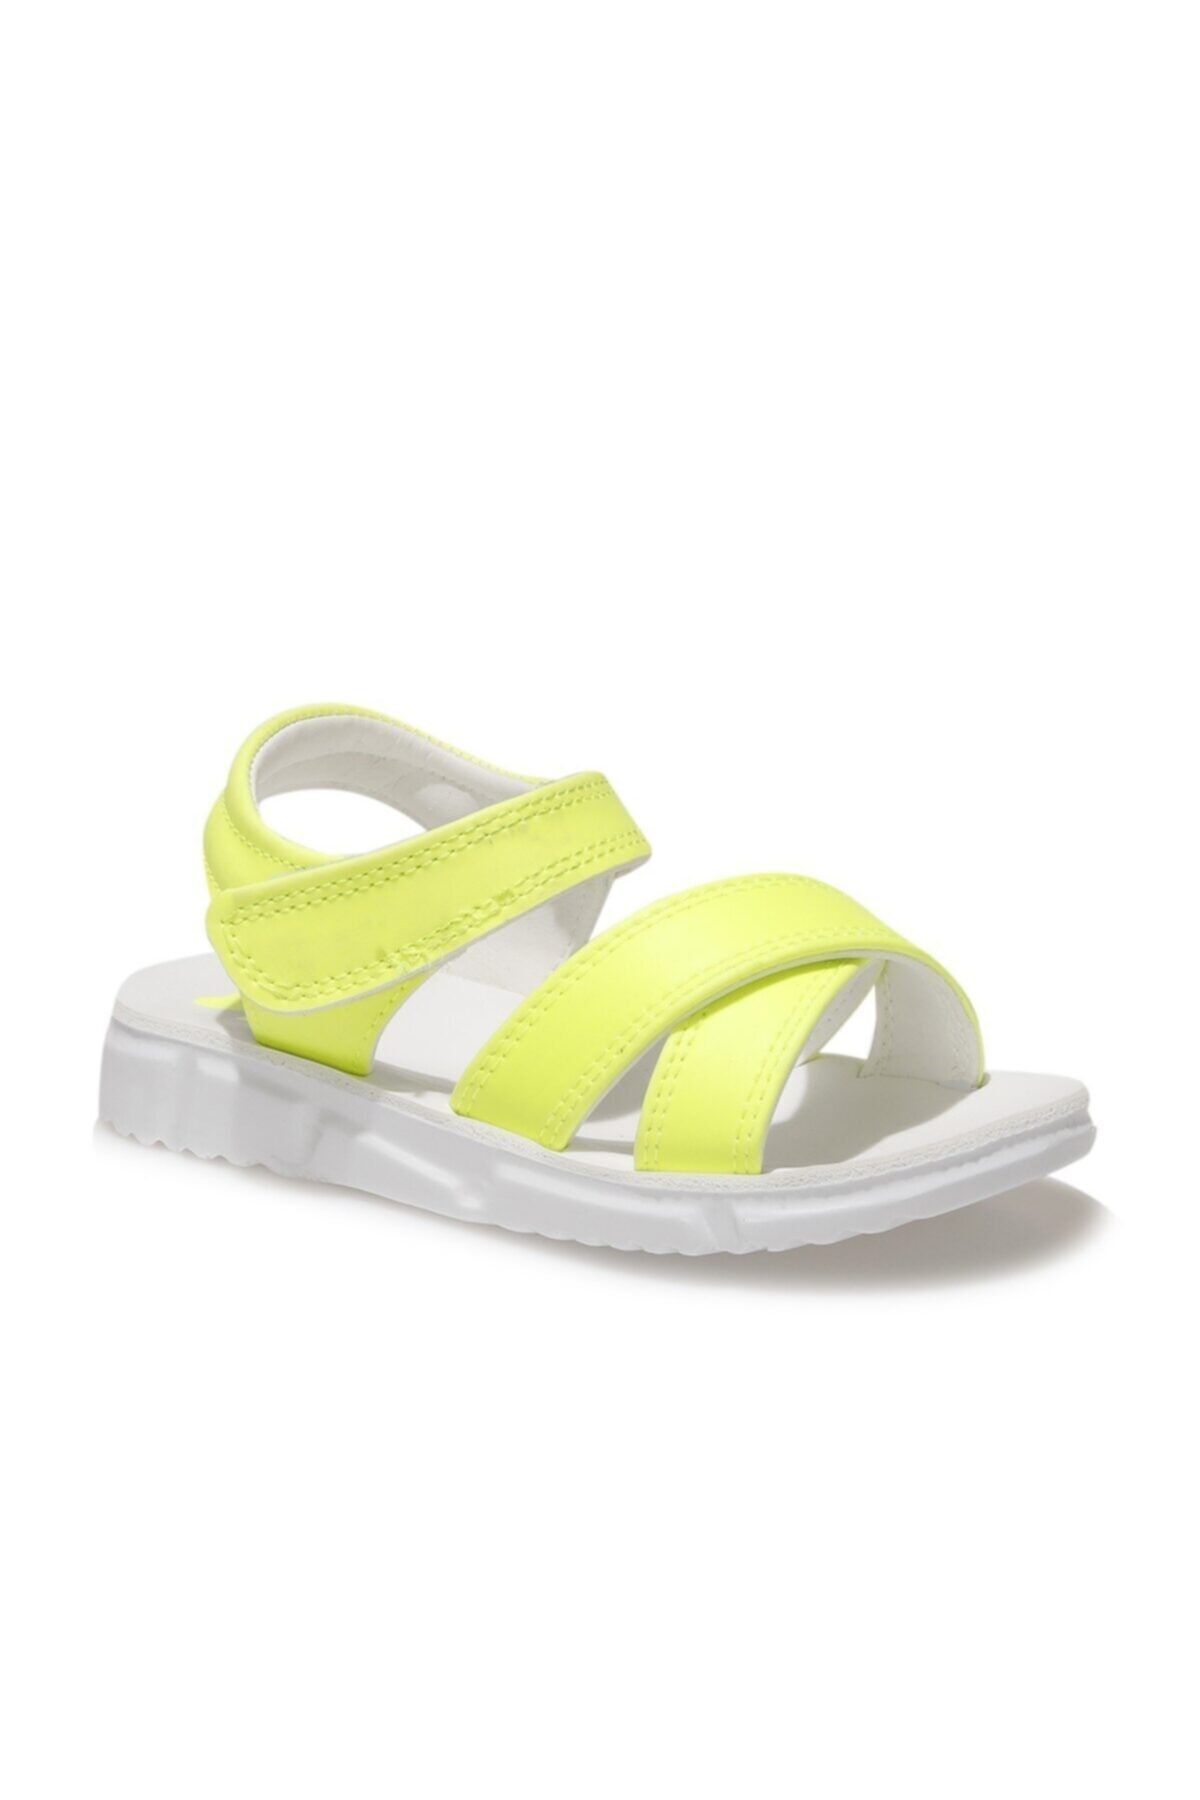 SEVENTEEN VELMA 1FX Neon Sarı Kız Çocuk Sandalet 101029290